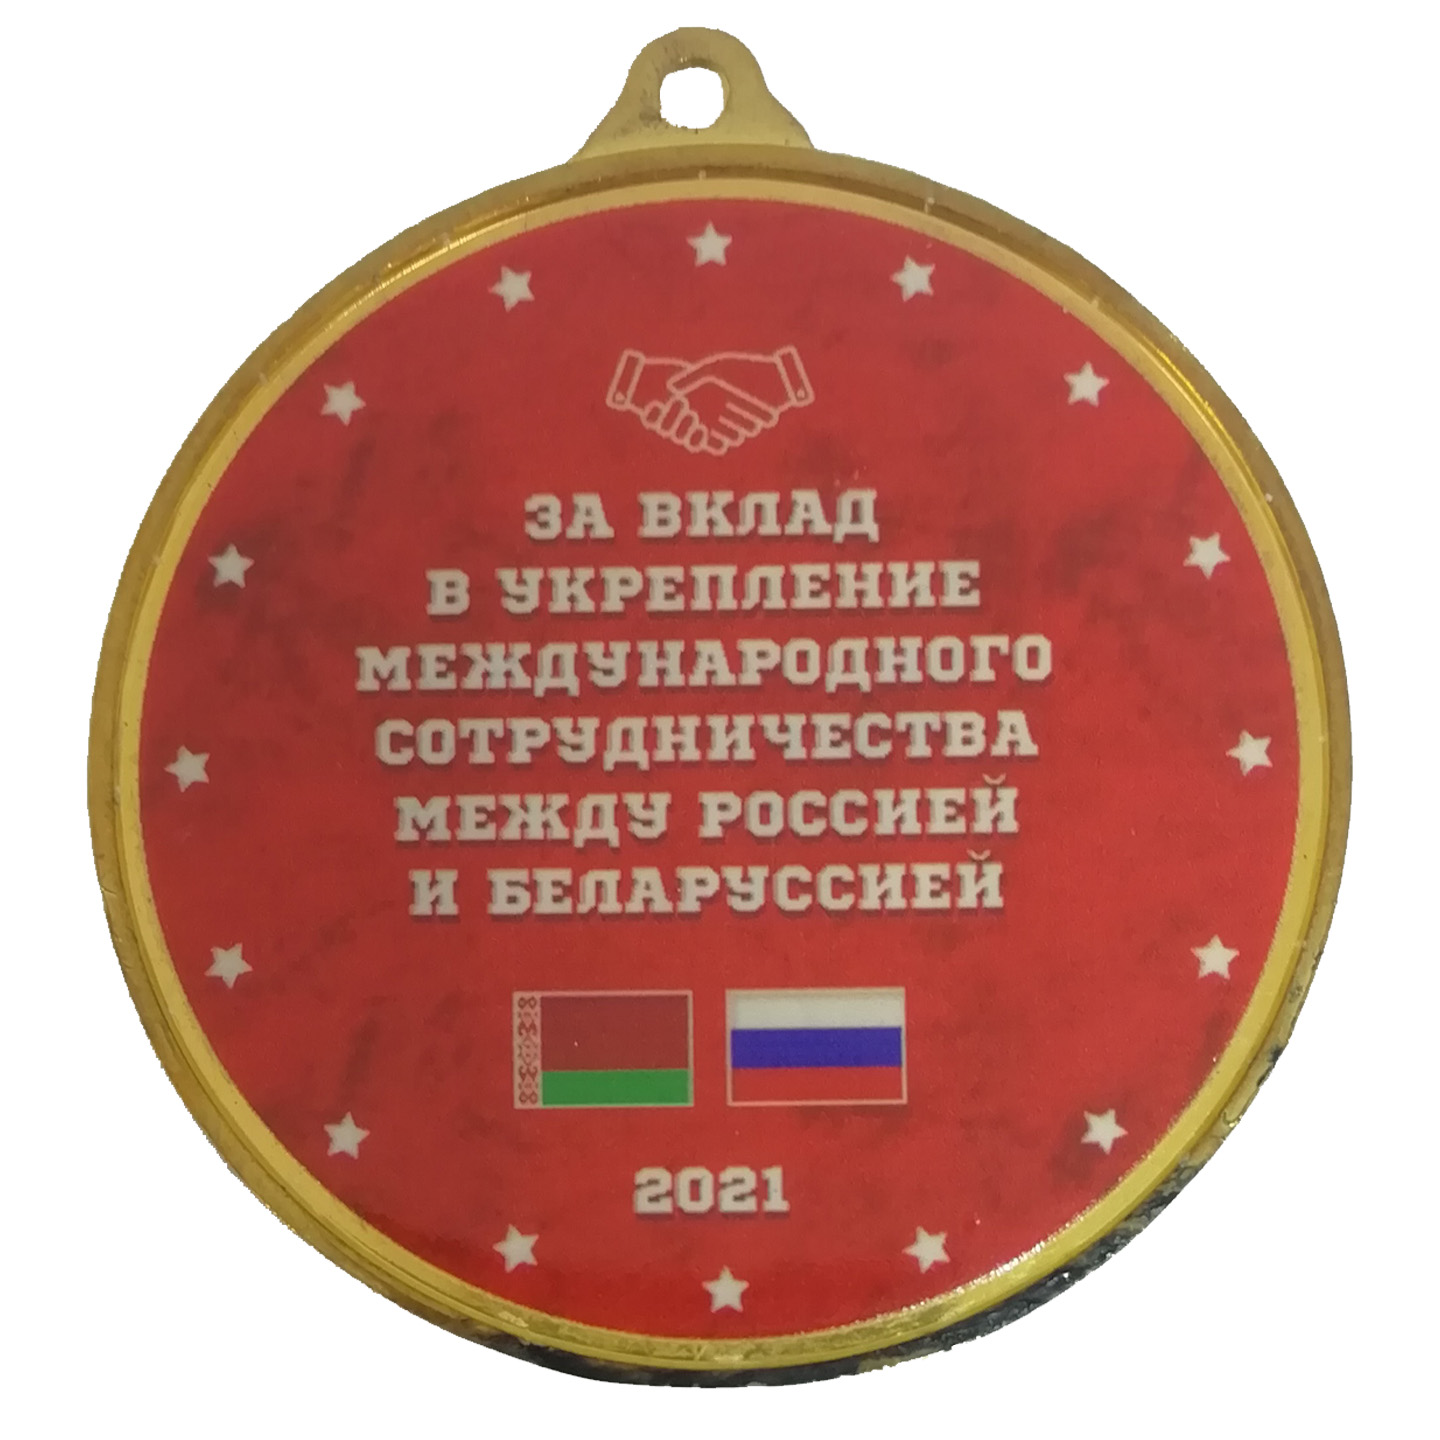 Медаль мд658, медаль за укрепление международного сотрудничества,  